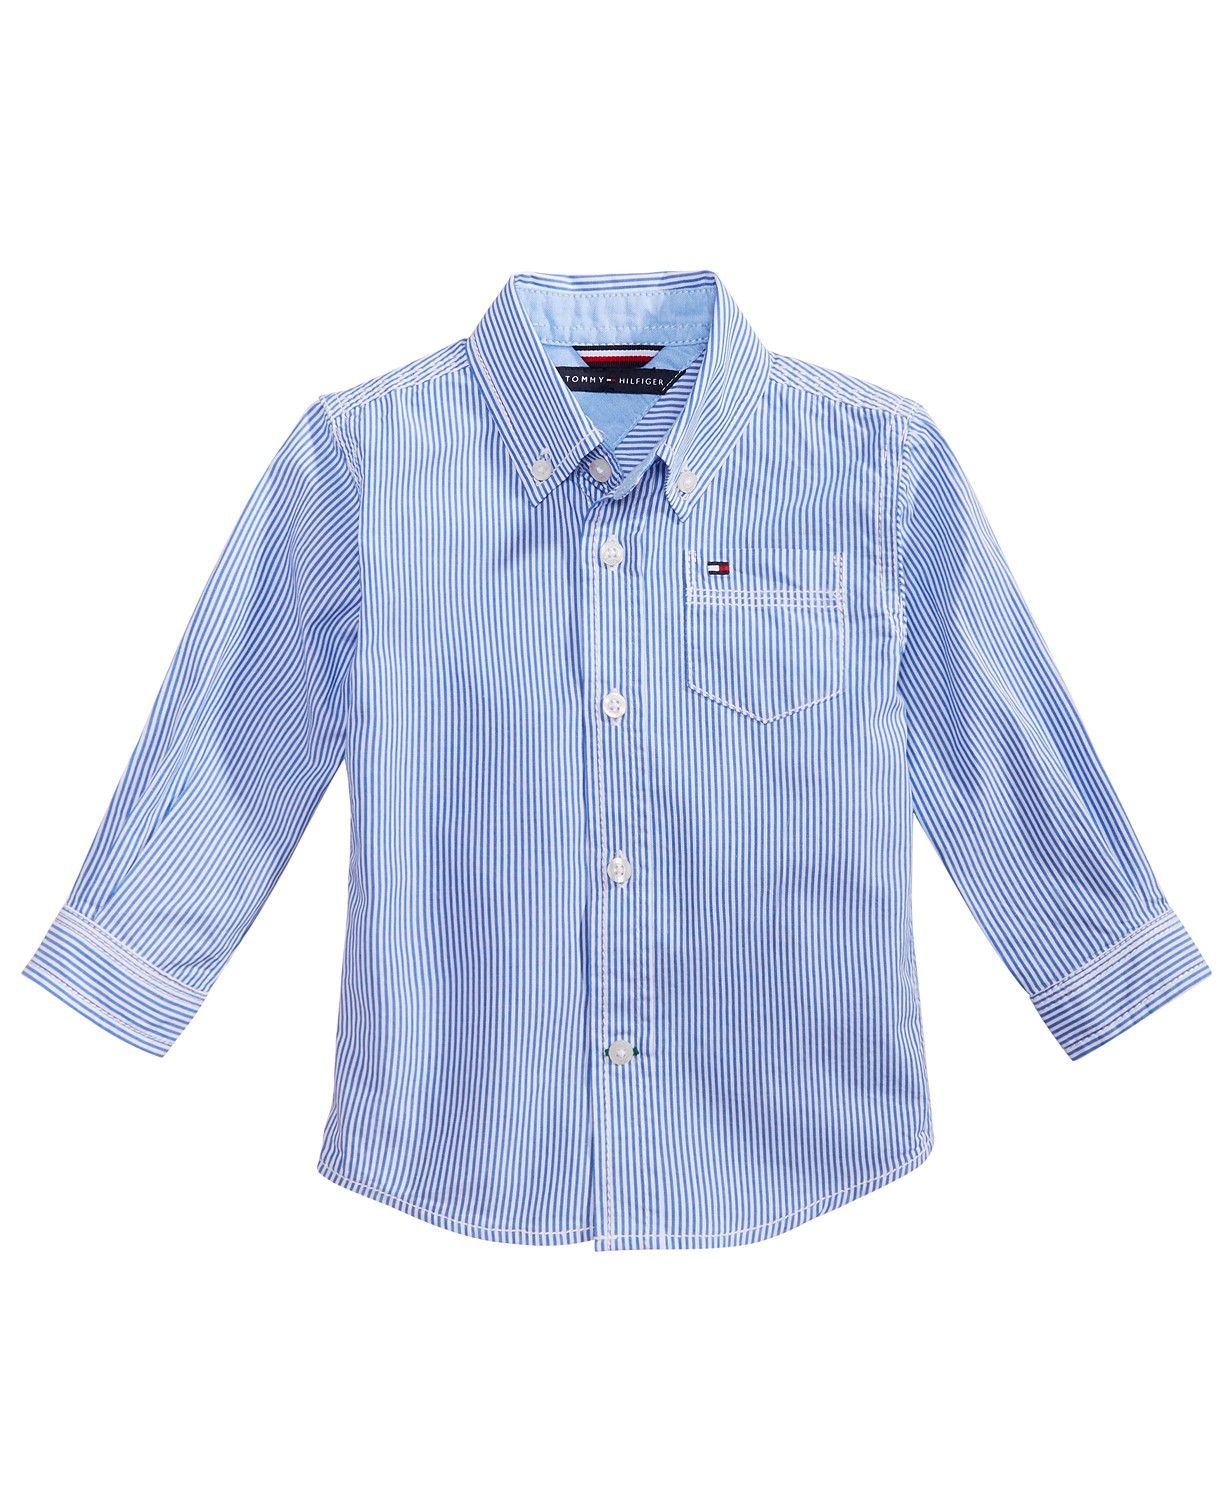 Tommy Hilfiger značková košile pro hlapečka Baby Boys Button Down Stripe Shirt